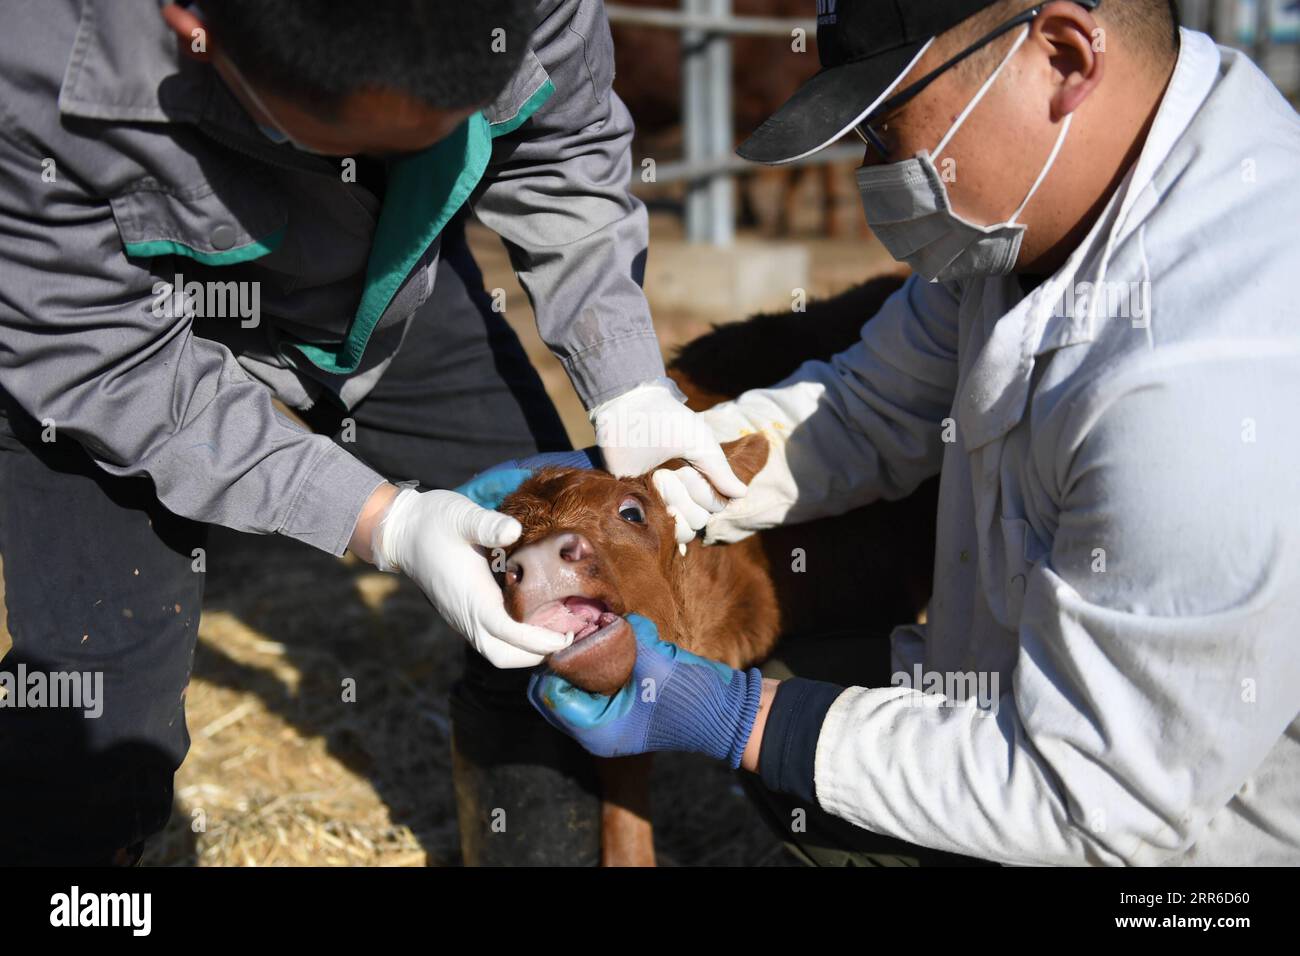 210207 -- XI AN, 7 febbraio 2021 -- i membri del personale controllano un vitello al China's National Beef Cattle Improvement Center di Yangling, provincia dello Shaanxi della Cina nord-occidentale, 5 febbraio 2021. Fondato nel 2008 a Yangling, il National Beef Cattle Improvement Center è l'unica piattaforma a livello nazionale che integra le funzioni di miglioramento genetico, allevamento e dimostrazione del bestiame bovino in Cina. Attualmente, ci sono più di 400 bovini nella base. CHINA-SHAANXI-NATIONAL BEEF BOVINE IMPROVENMENT CENTRE CN LIXYIBO PUBLICATIONXNOTXINXCHN Foto Stock